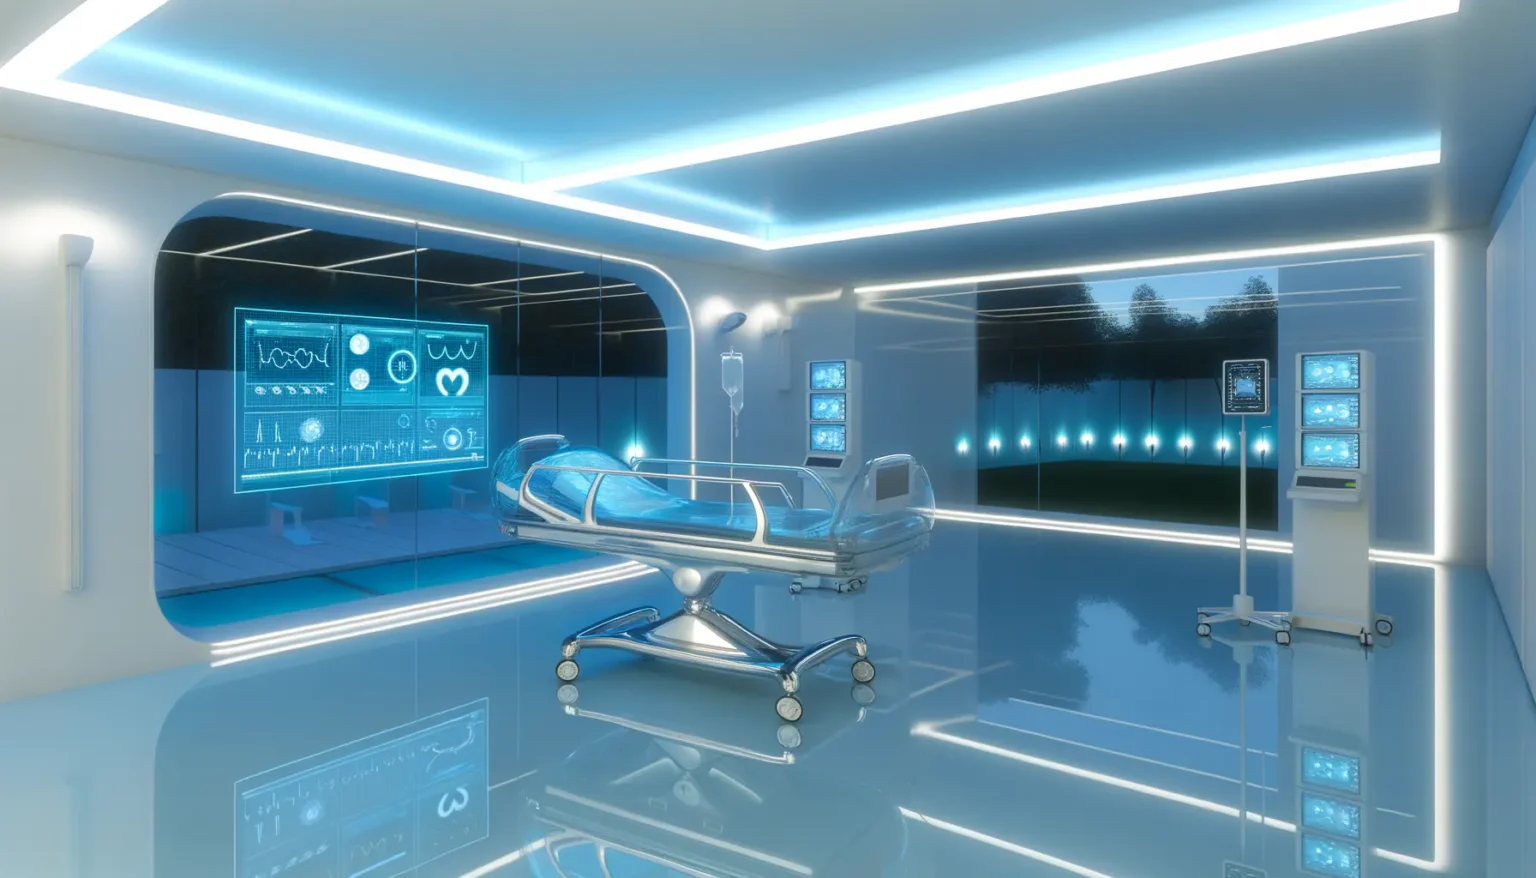 Futuristisches Krankenhauszimmer mit einem modernen, transparenten medizinischen Bett in der Mitte, umgeben von blau beleuchteten Monitoren und Wänden, die medizinische Daten anzeigen. Der Raum hat eine glänzende Oberfläche mit Reflexionen und ist mit Hightech-Geräten und einer ruhigen Außenansicht durch Fenster ausgestattet.